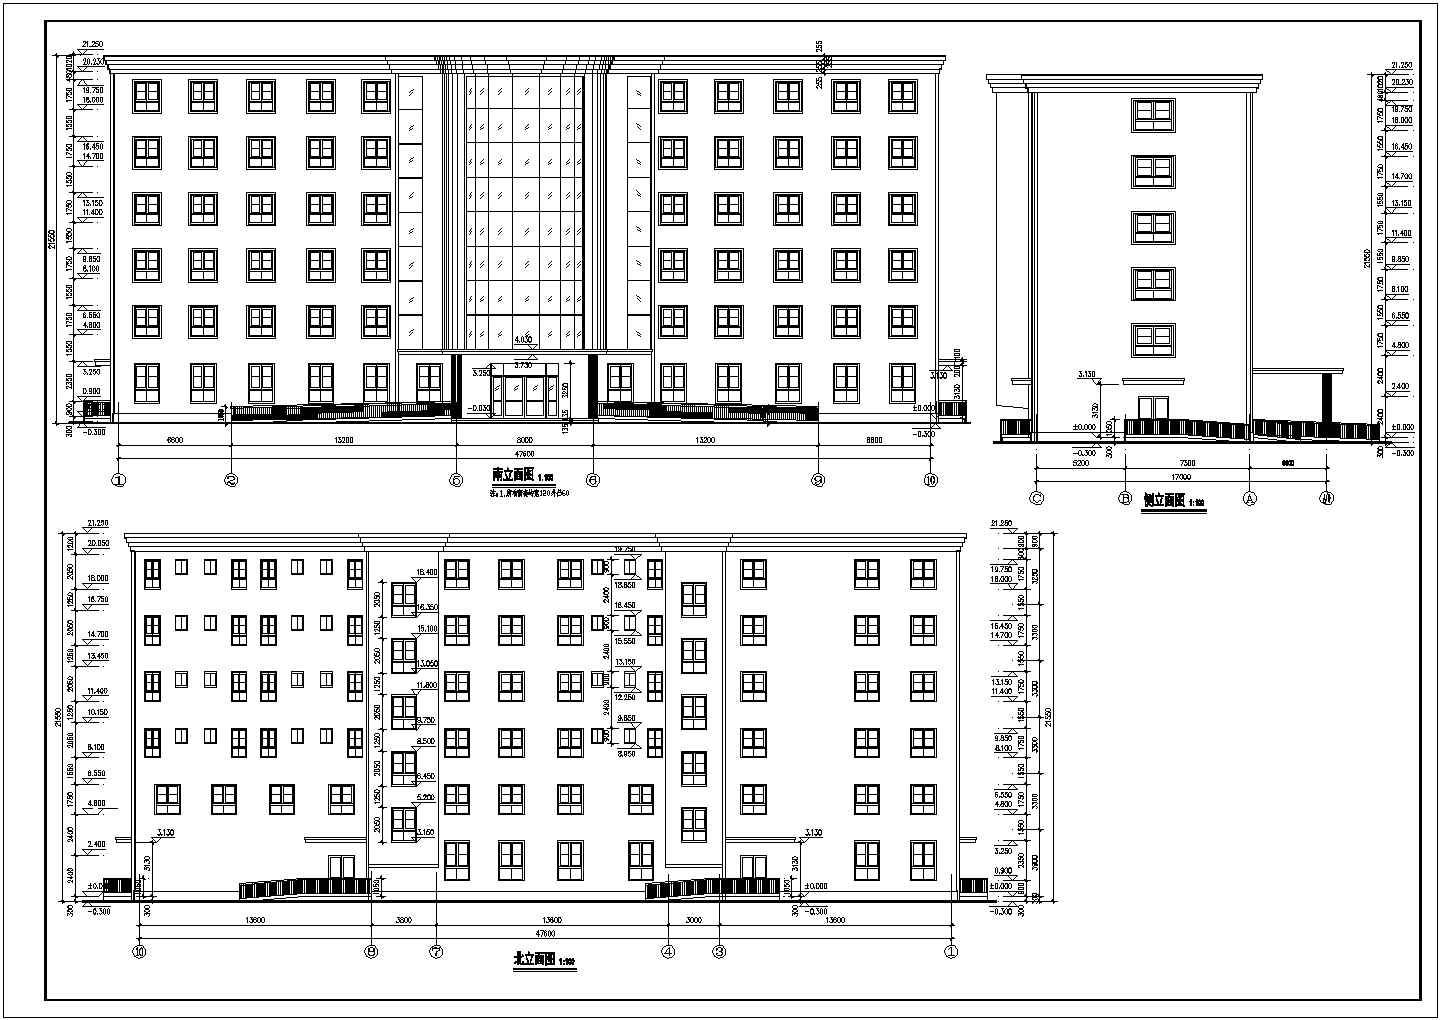 江苏某建筑公司在北方某地精品医院cad设计施工图纸(平面立面剖面楼梯)